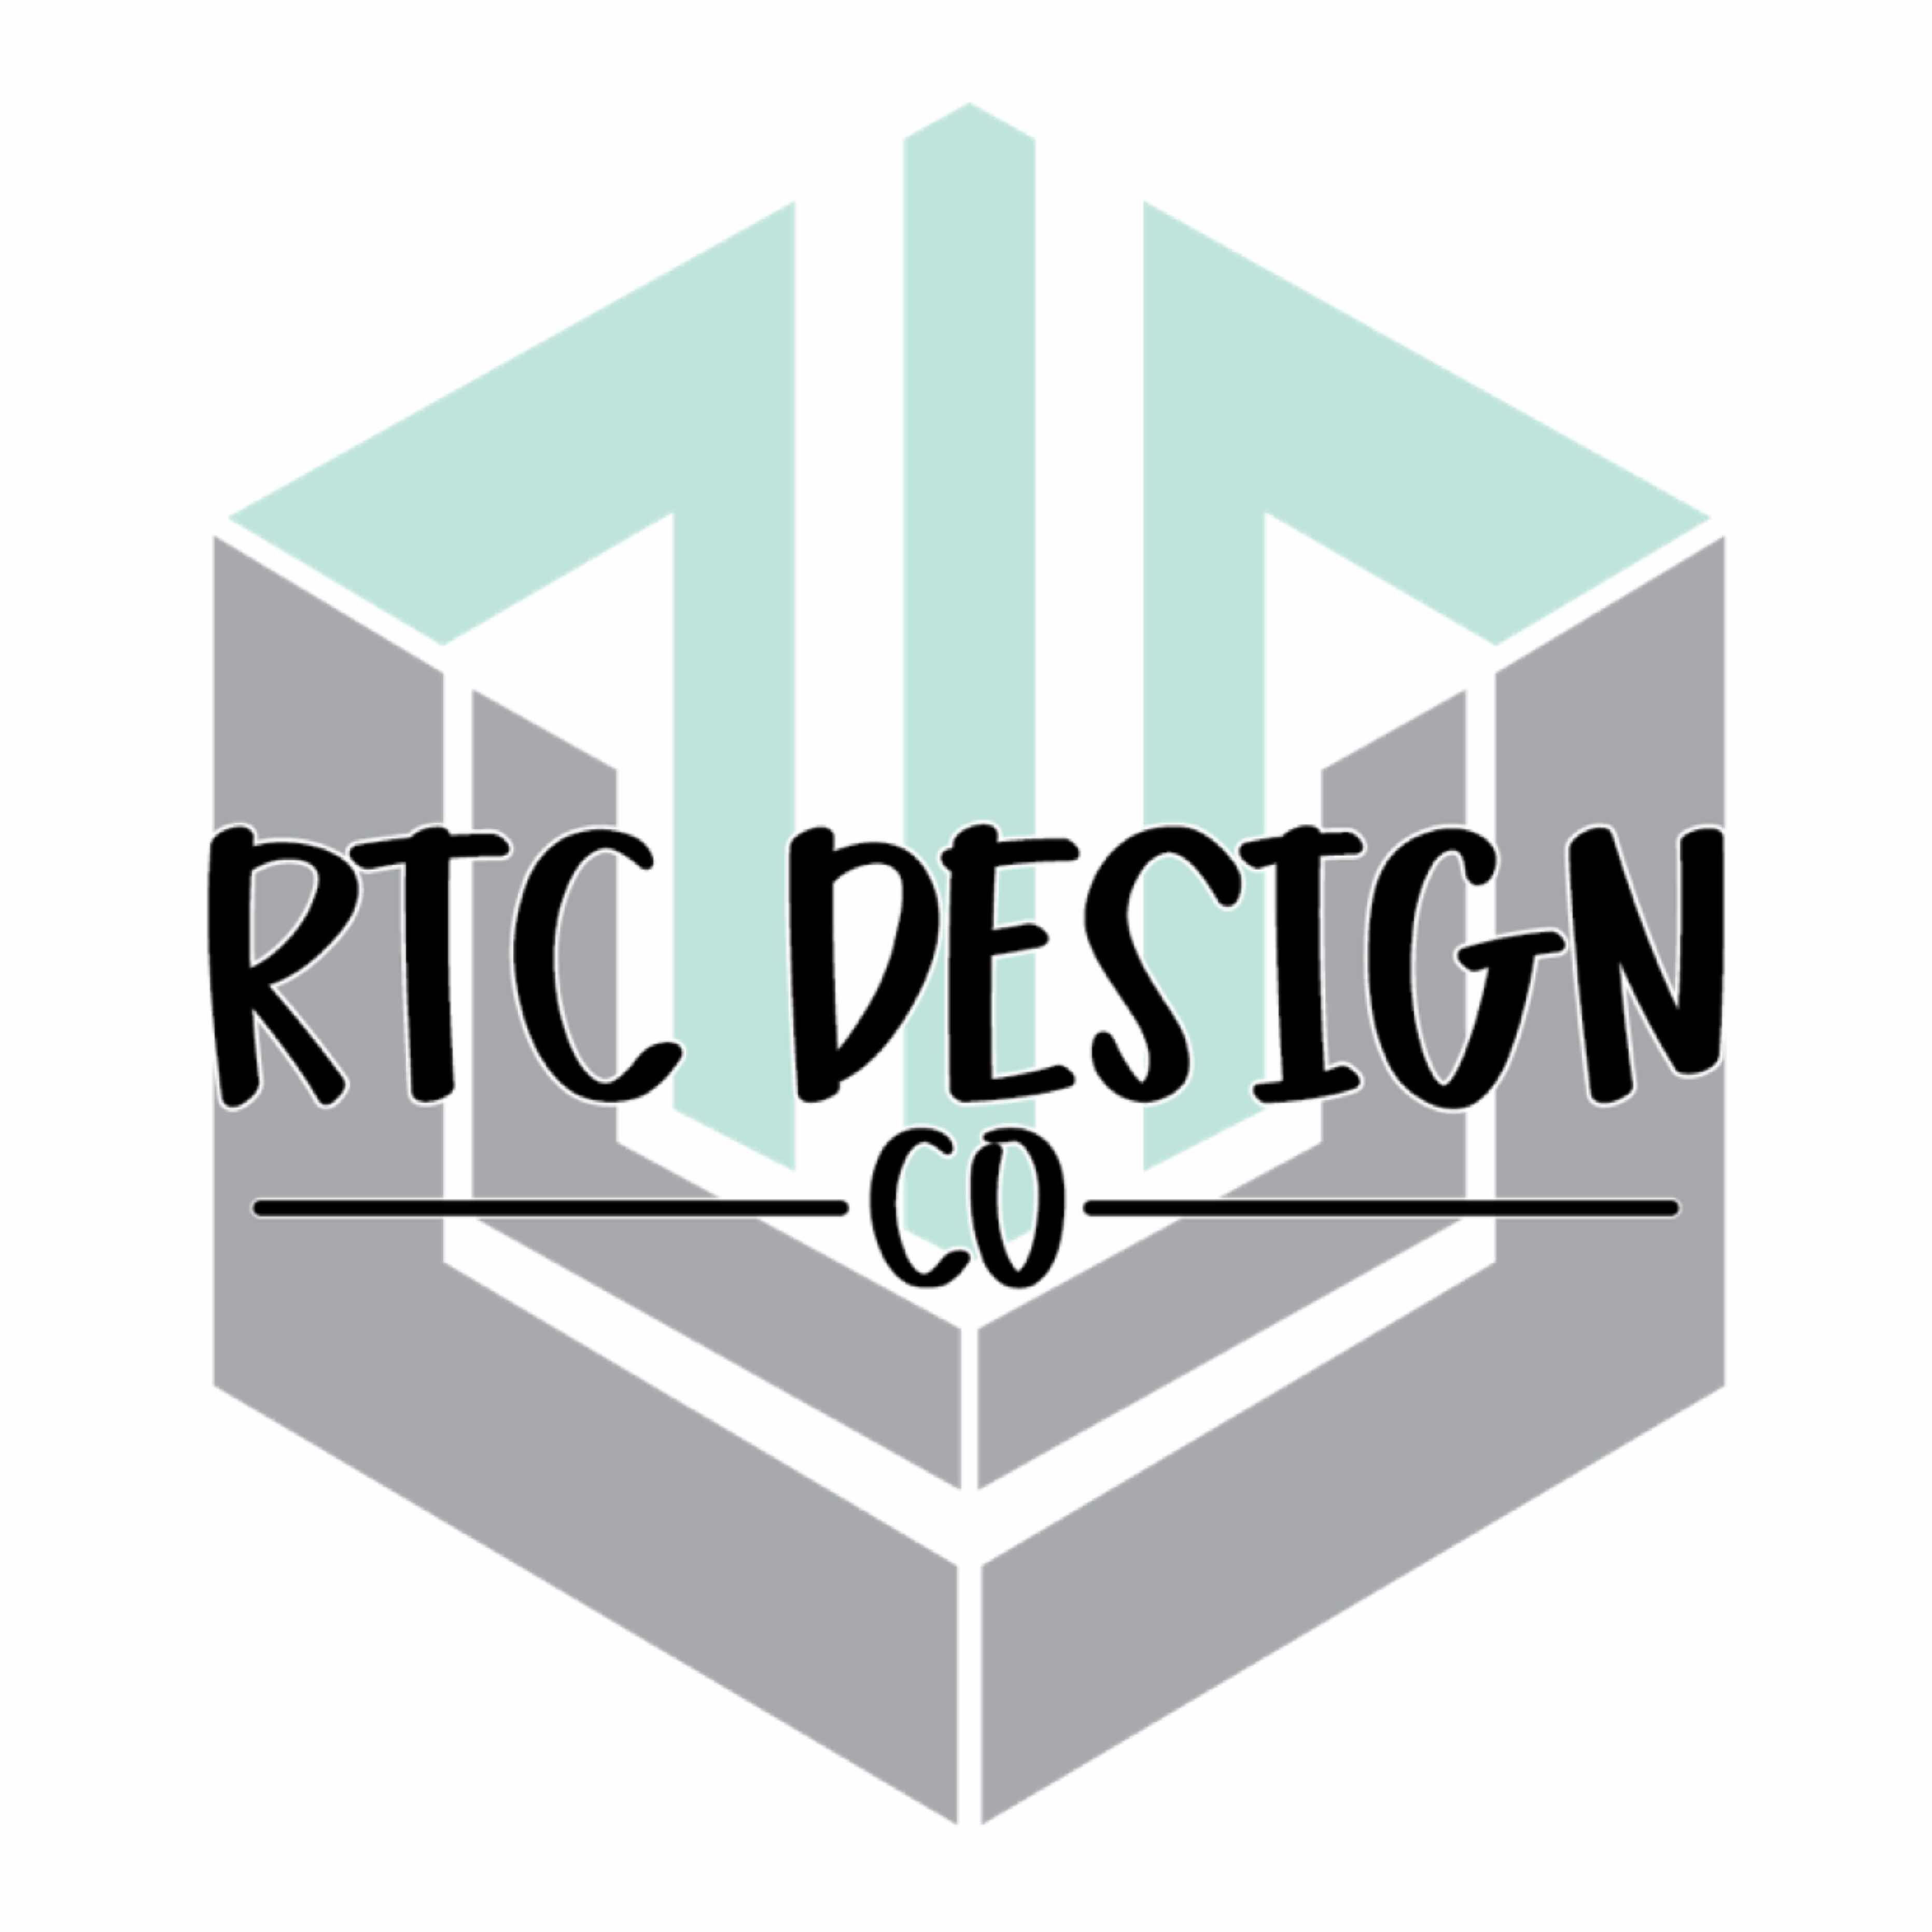 RTC_DesignCo